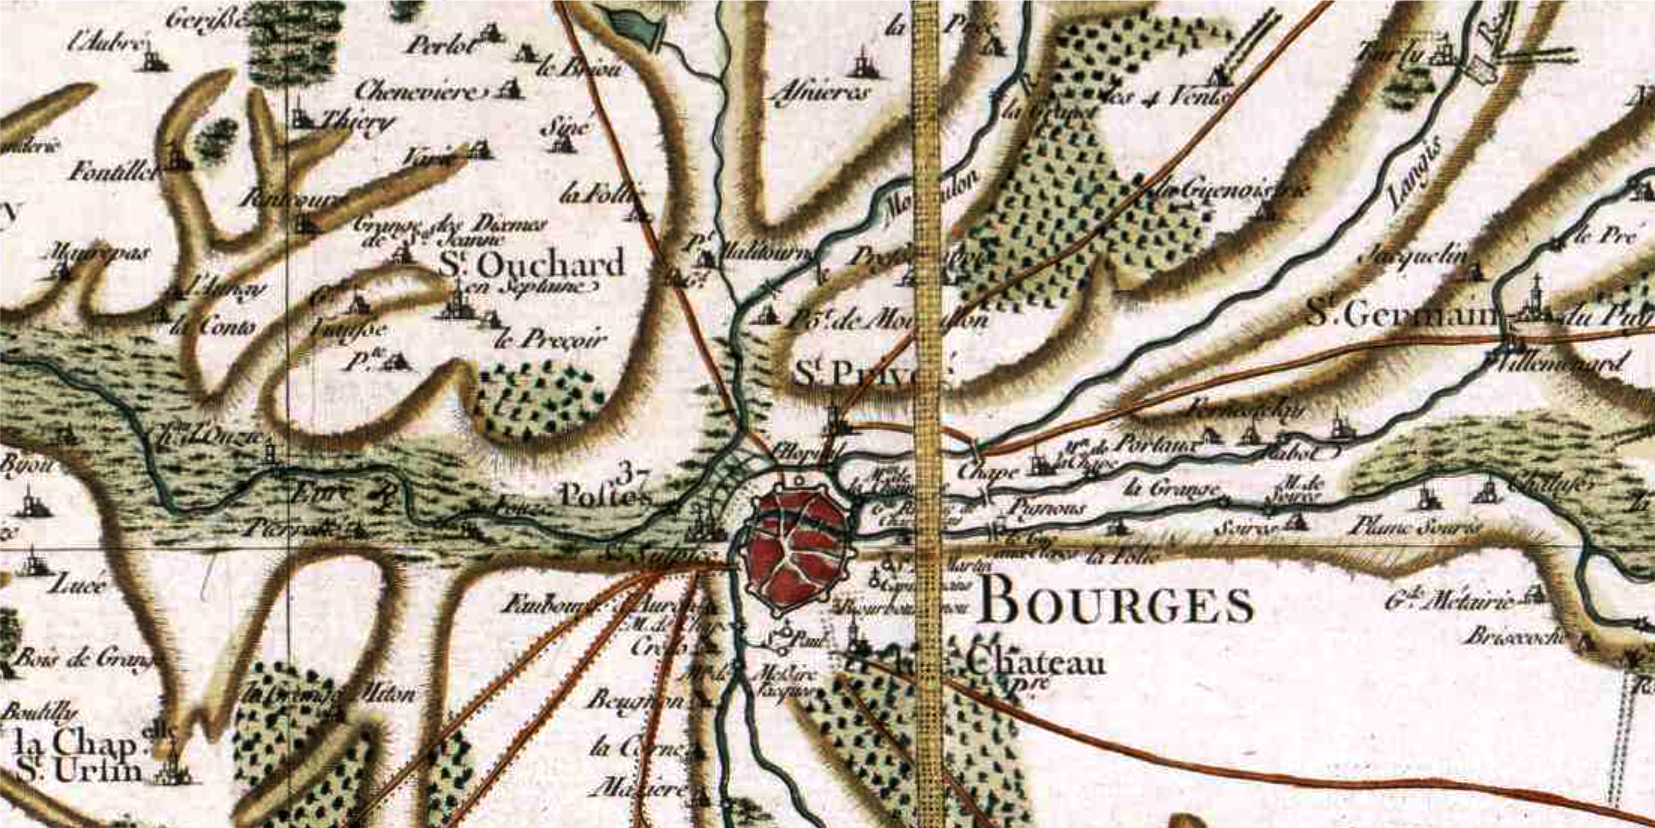 Bourges 18 cassini